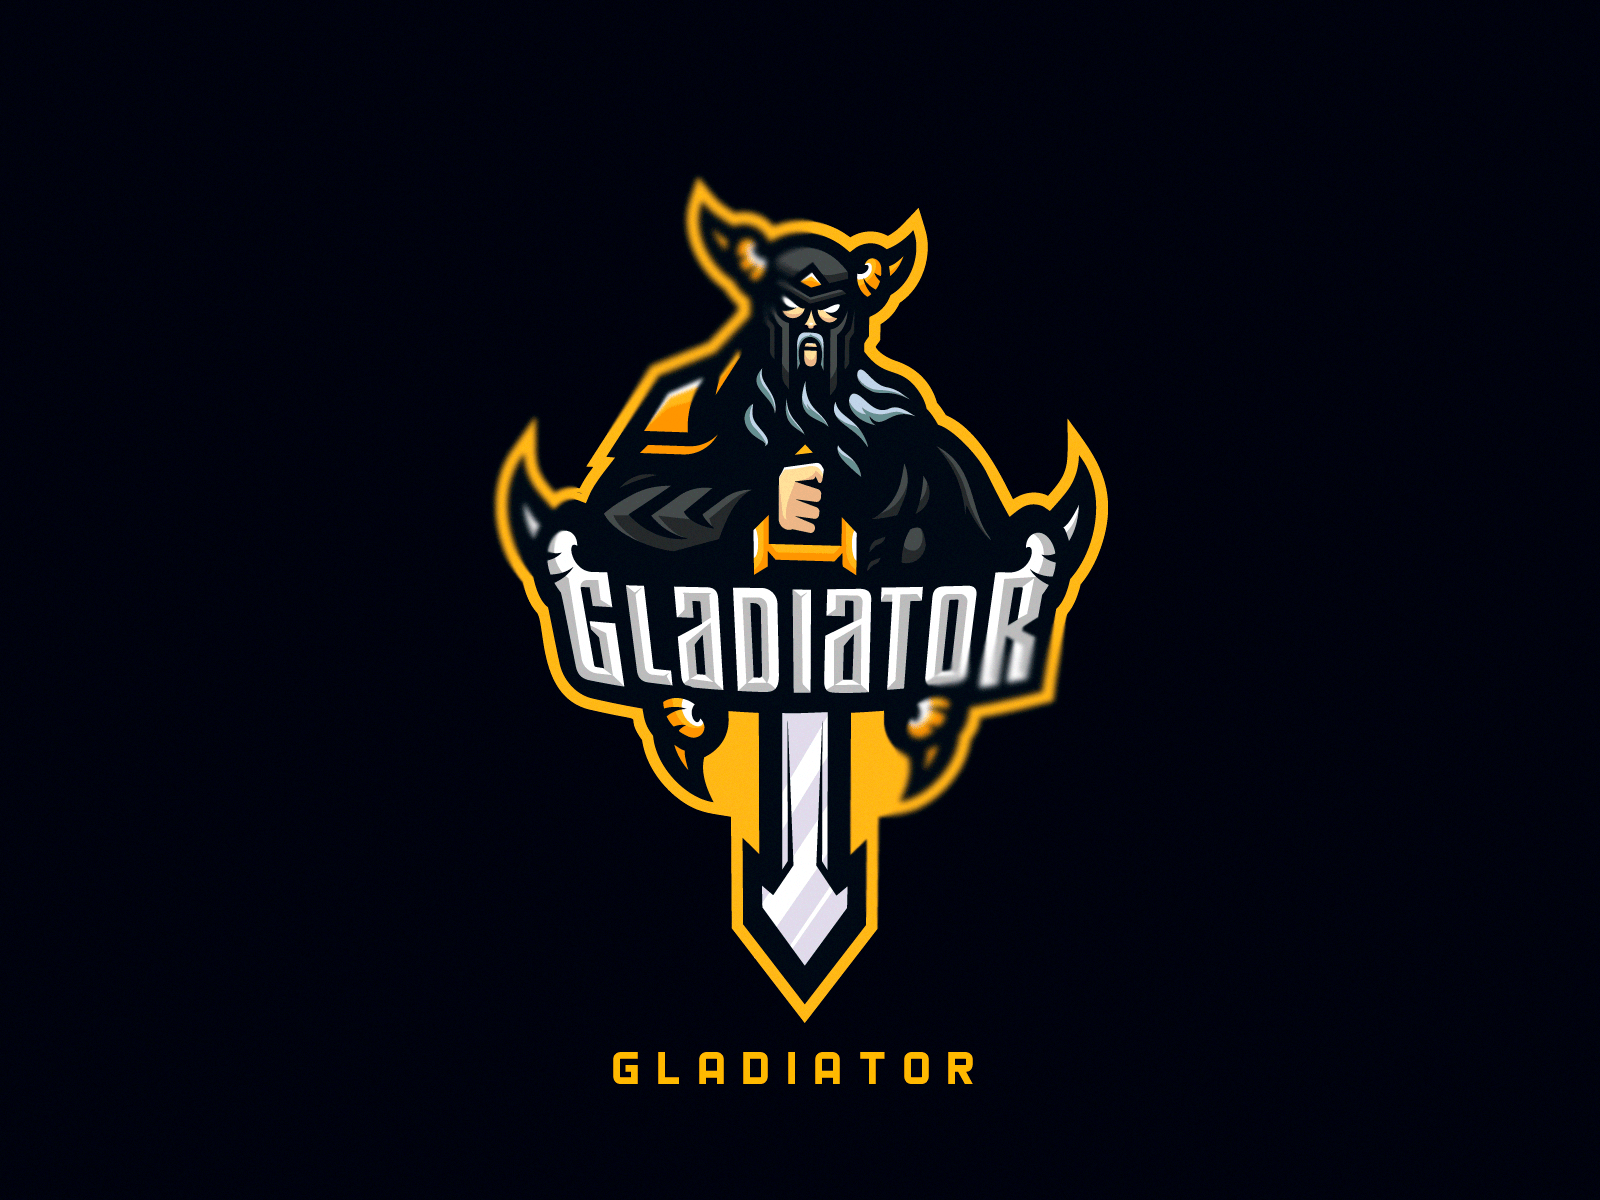 Premium Vector | Gladiator logo design